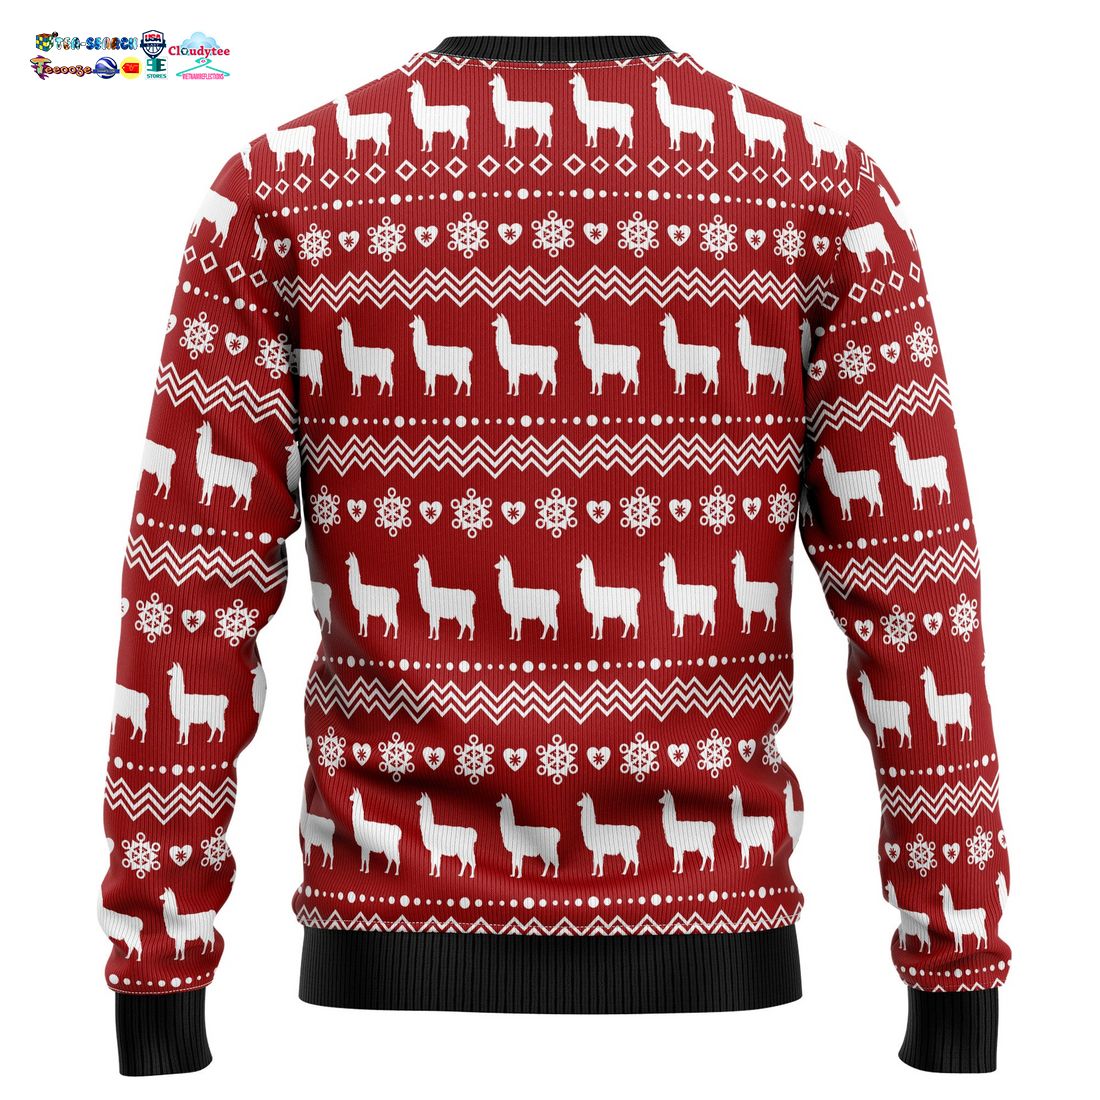 Llama La La La La Ugly Christmas Sweater